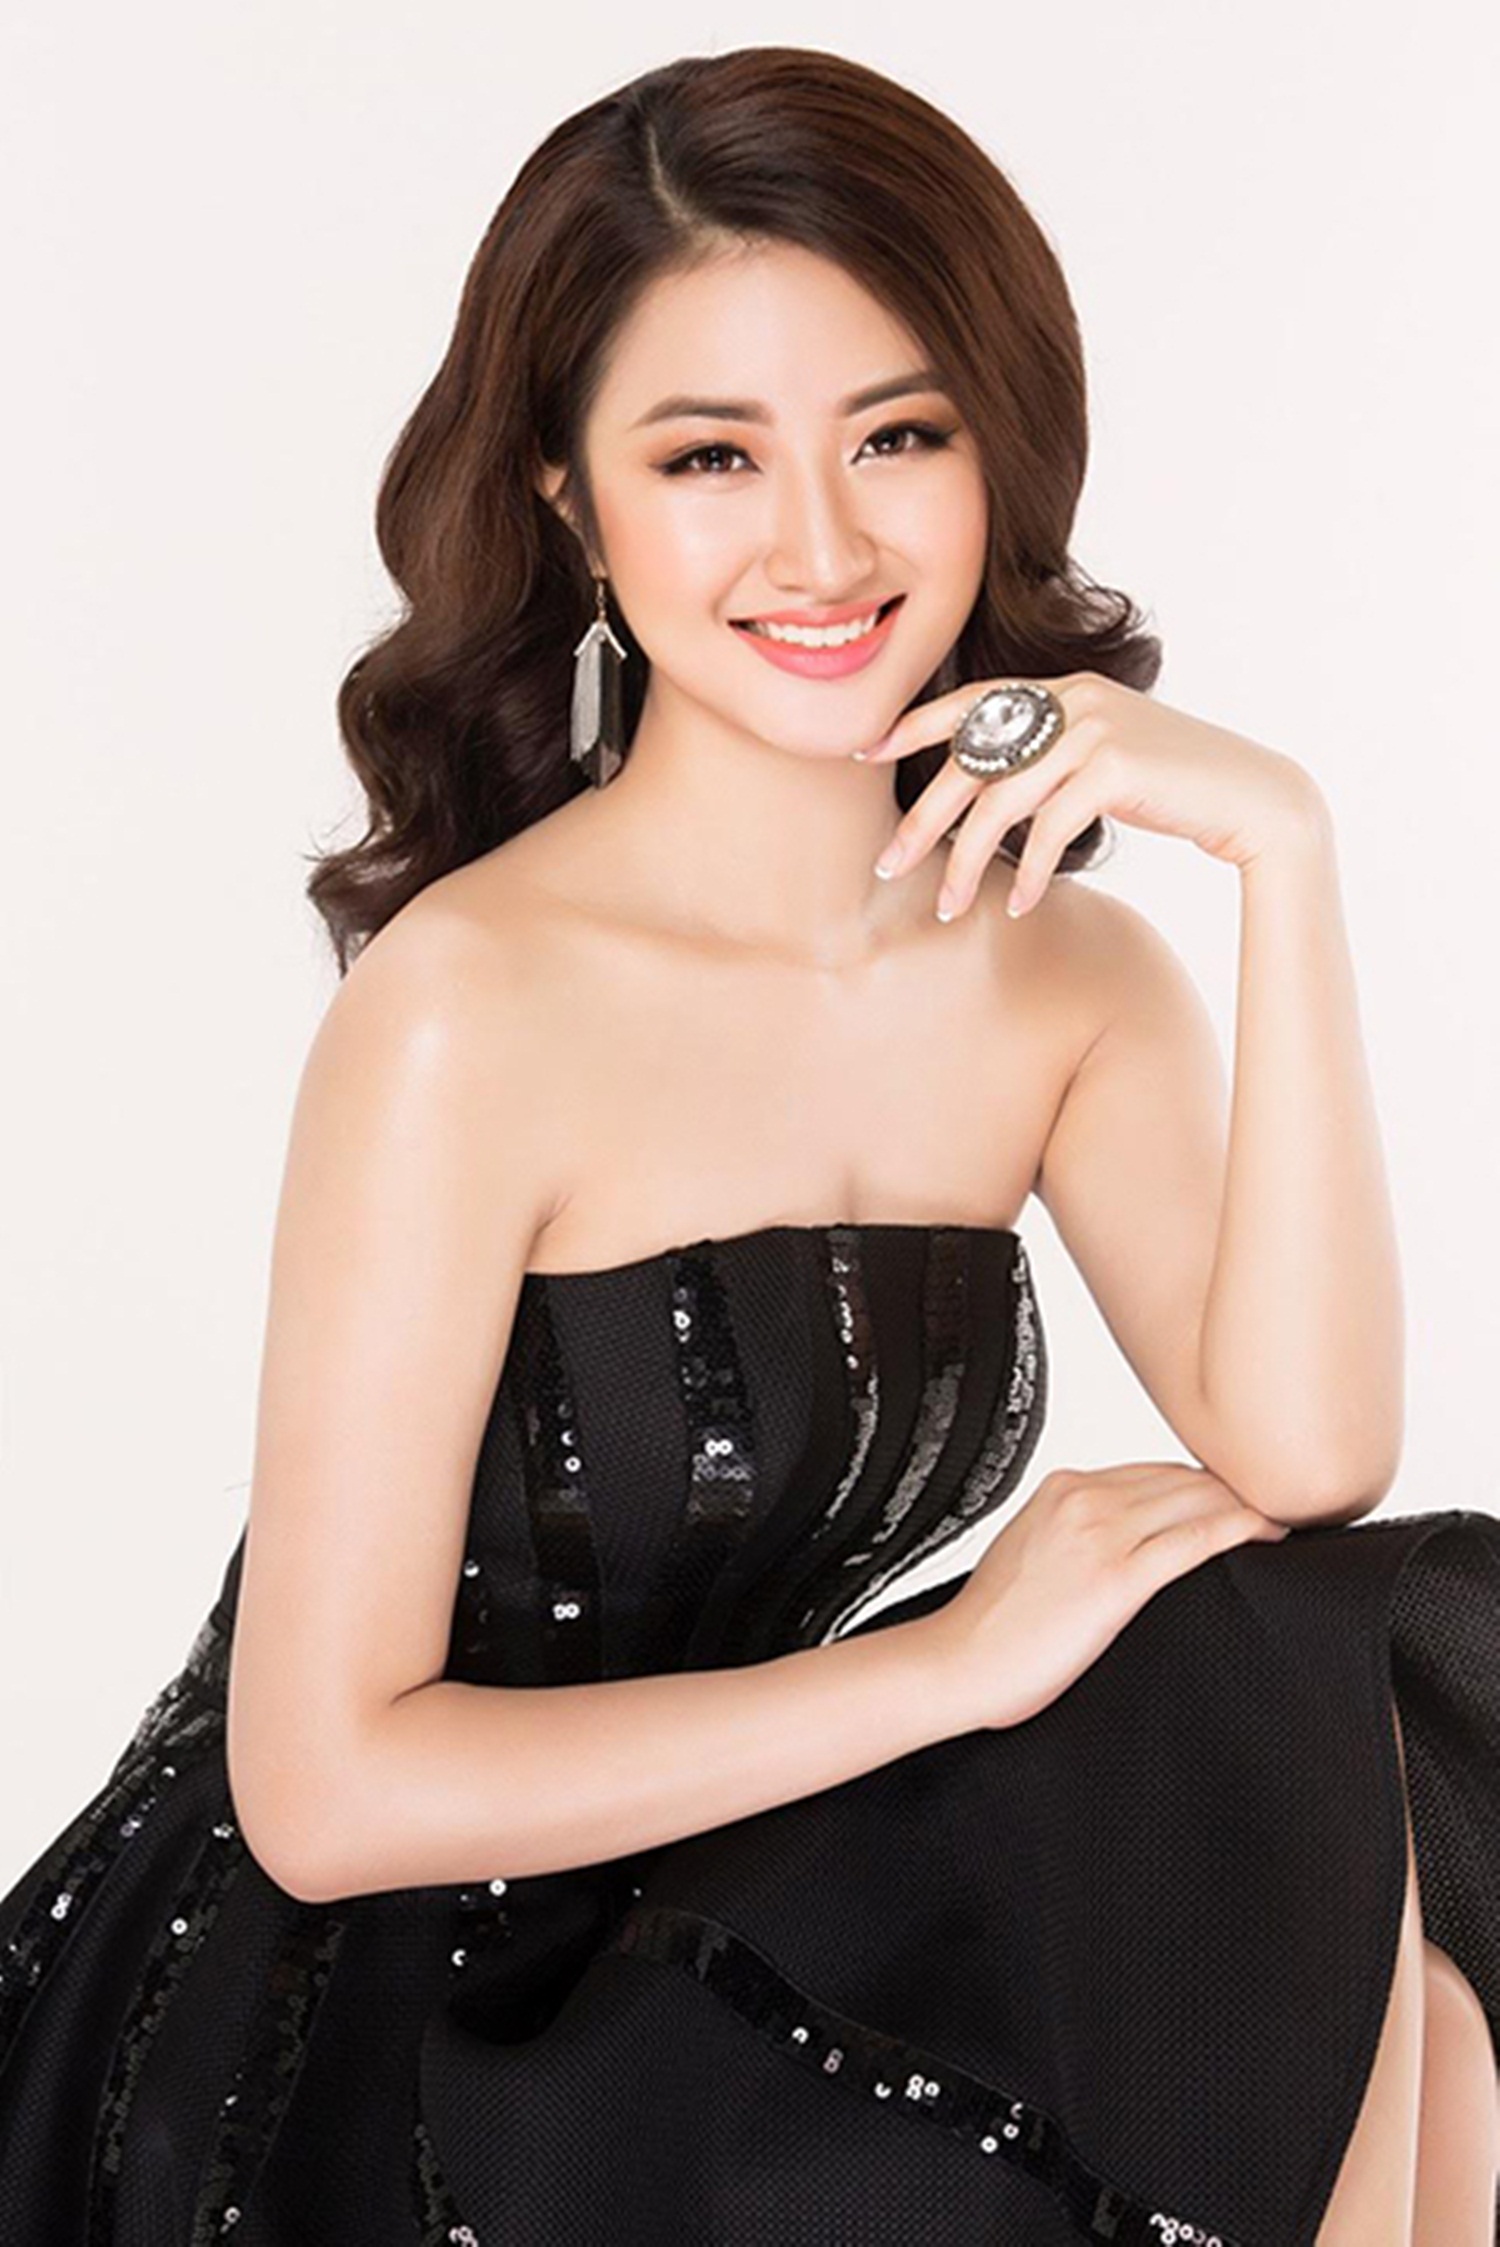 Hoa hậu Bản sắc Việt toàn cầu 2016 - người đẹp Trần Thị Thu Ngân sinh năm 1996 là sinh viên ngành Quản trị khách sạn tại Thụy Sĩ.